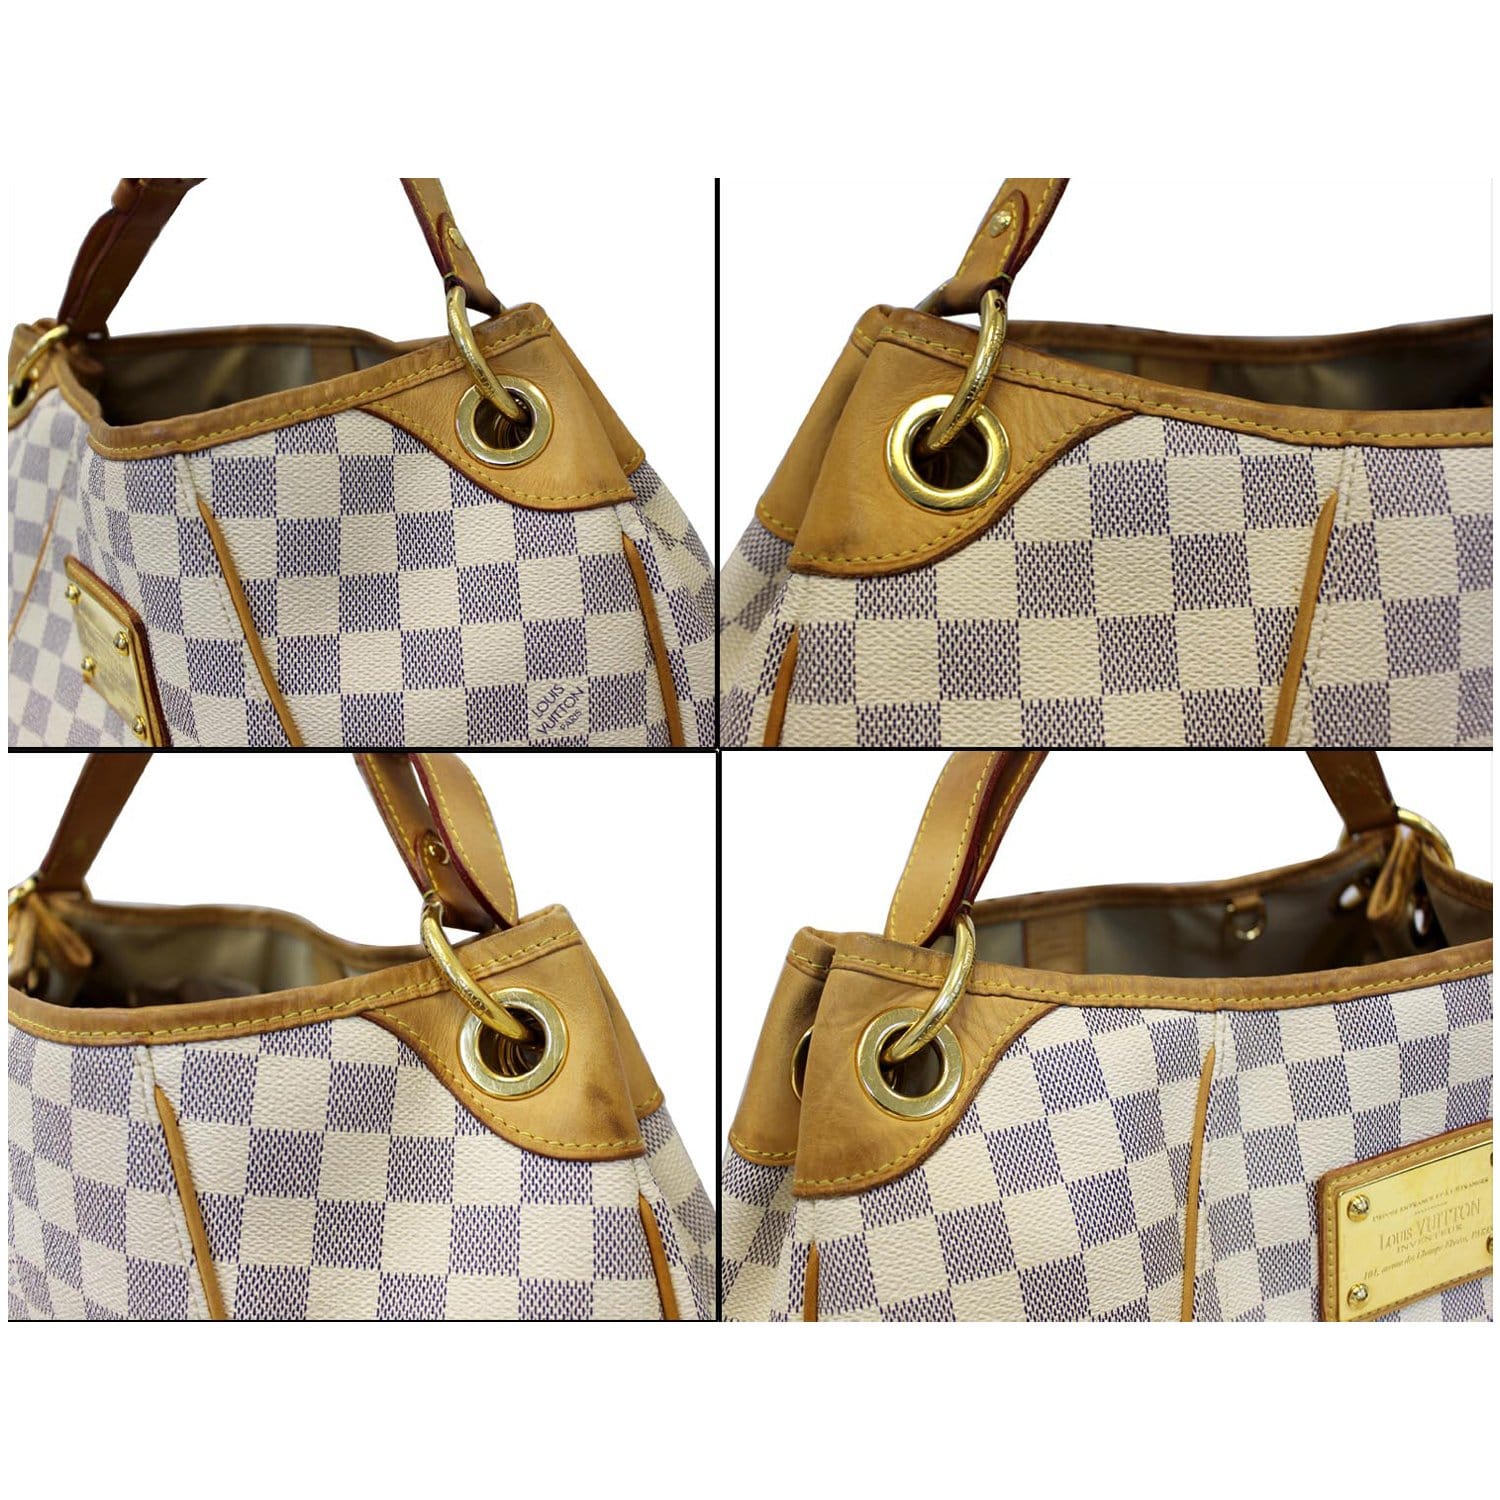 Pre-Owned Louis Vuitton Galliera Damier Azur PM Shoulder Bag - Excellent  Condition 